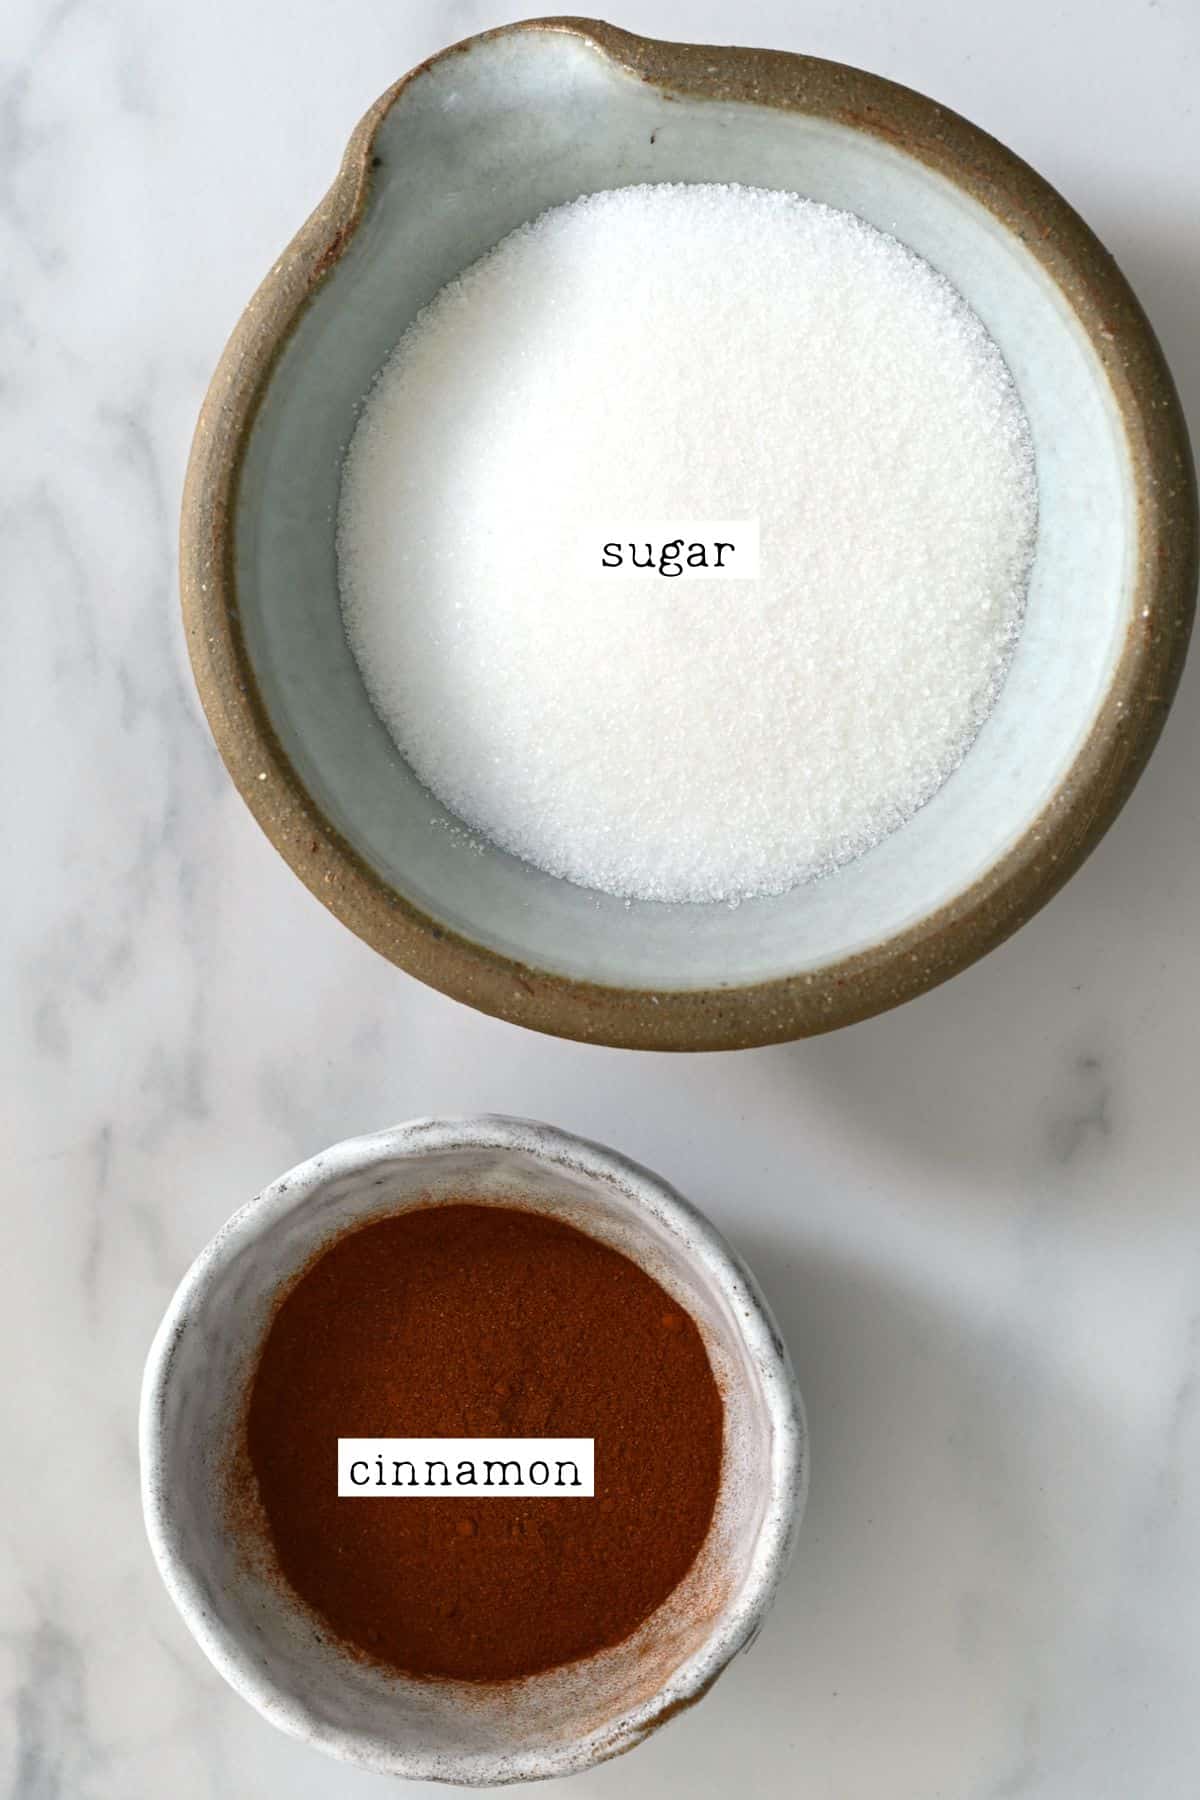 Steps for making cinnamon sugar